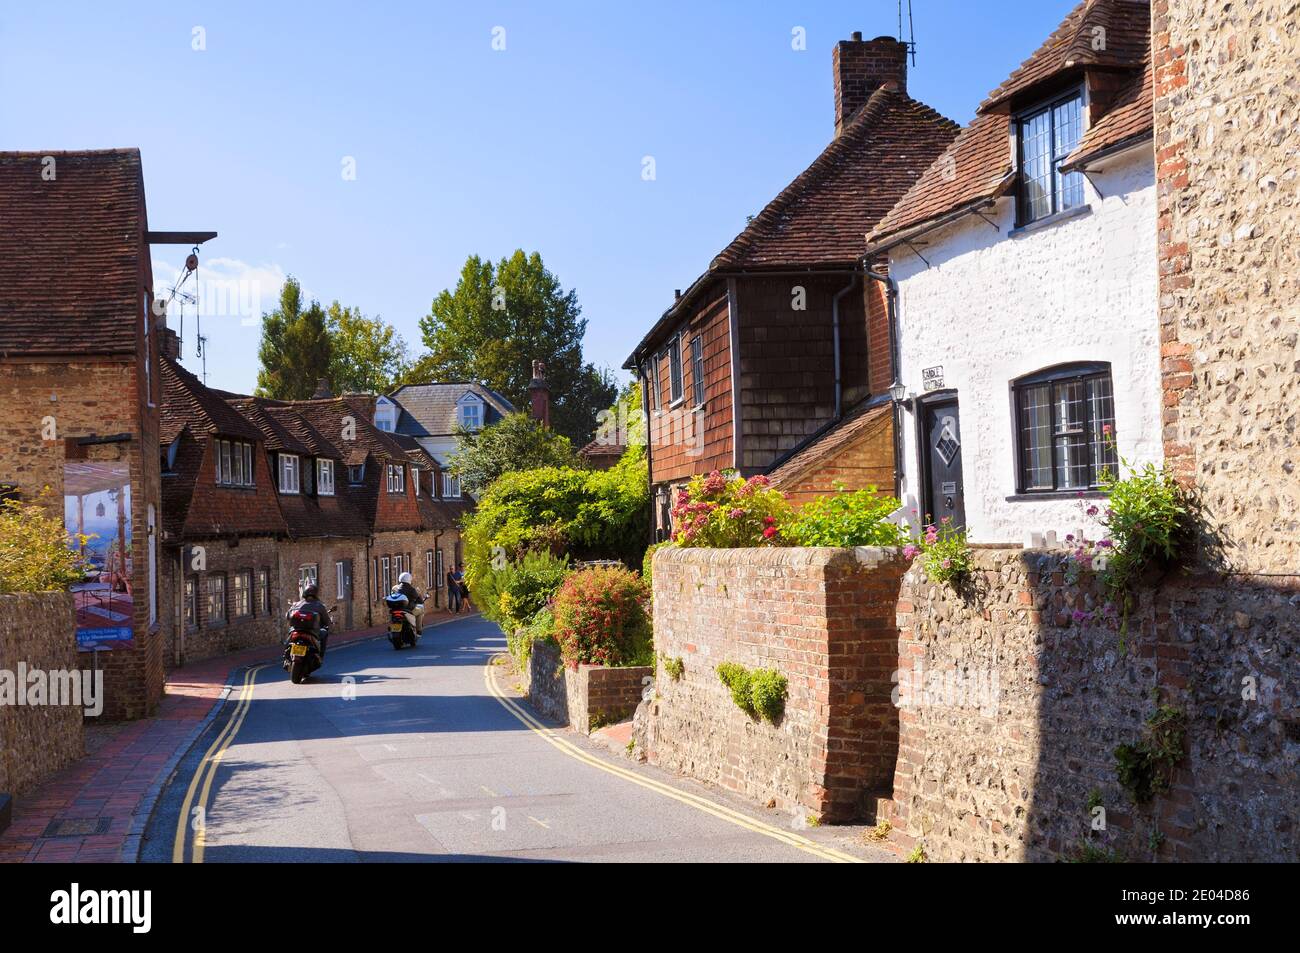 Charmants cottages d'époque sur la rue principale du village d'Alfriston, East Sussex, Angleterre, Royaume-Uni Banque D'Images